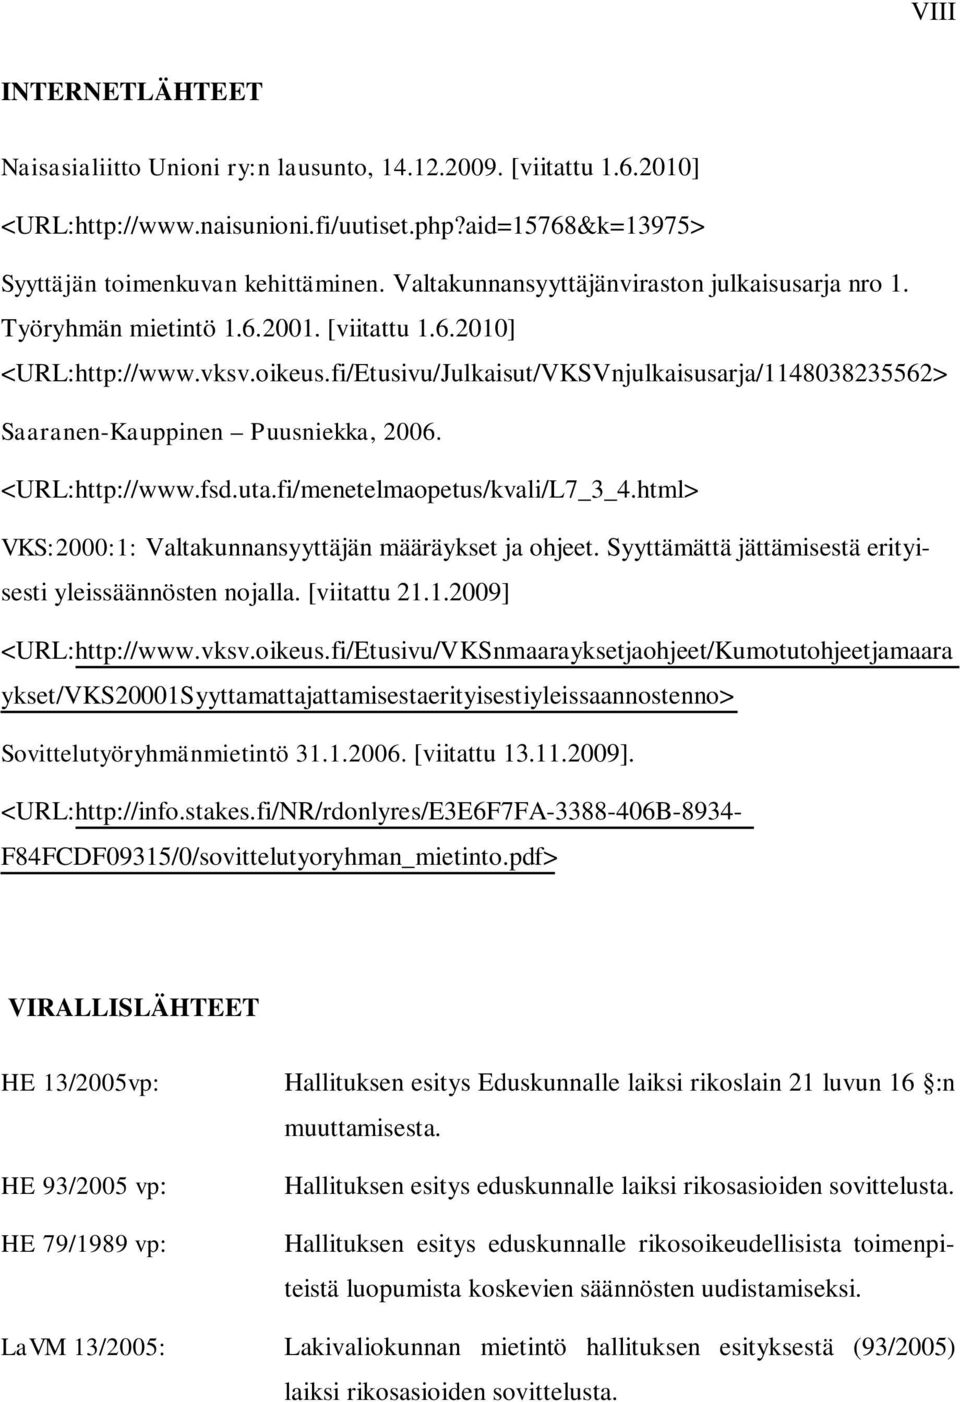 fi/Etusivu/Julkaisut/VKSVnjulkaisusarja/1148038235562> Saaranen-Kauppinen Puusniekka, 2006. <URL:http://www.fsd.uta.fi/menetelmaopetus/kvali/L7_3_4.